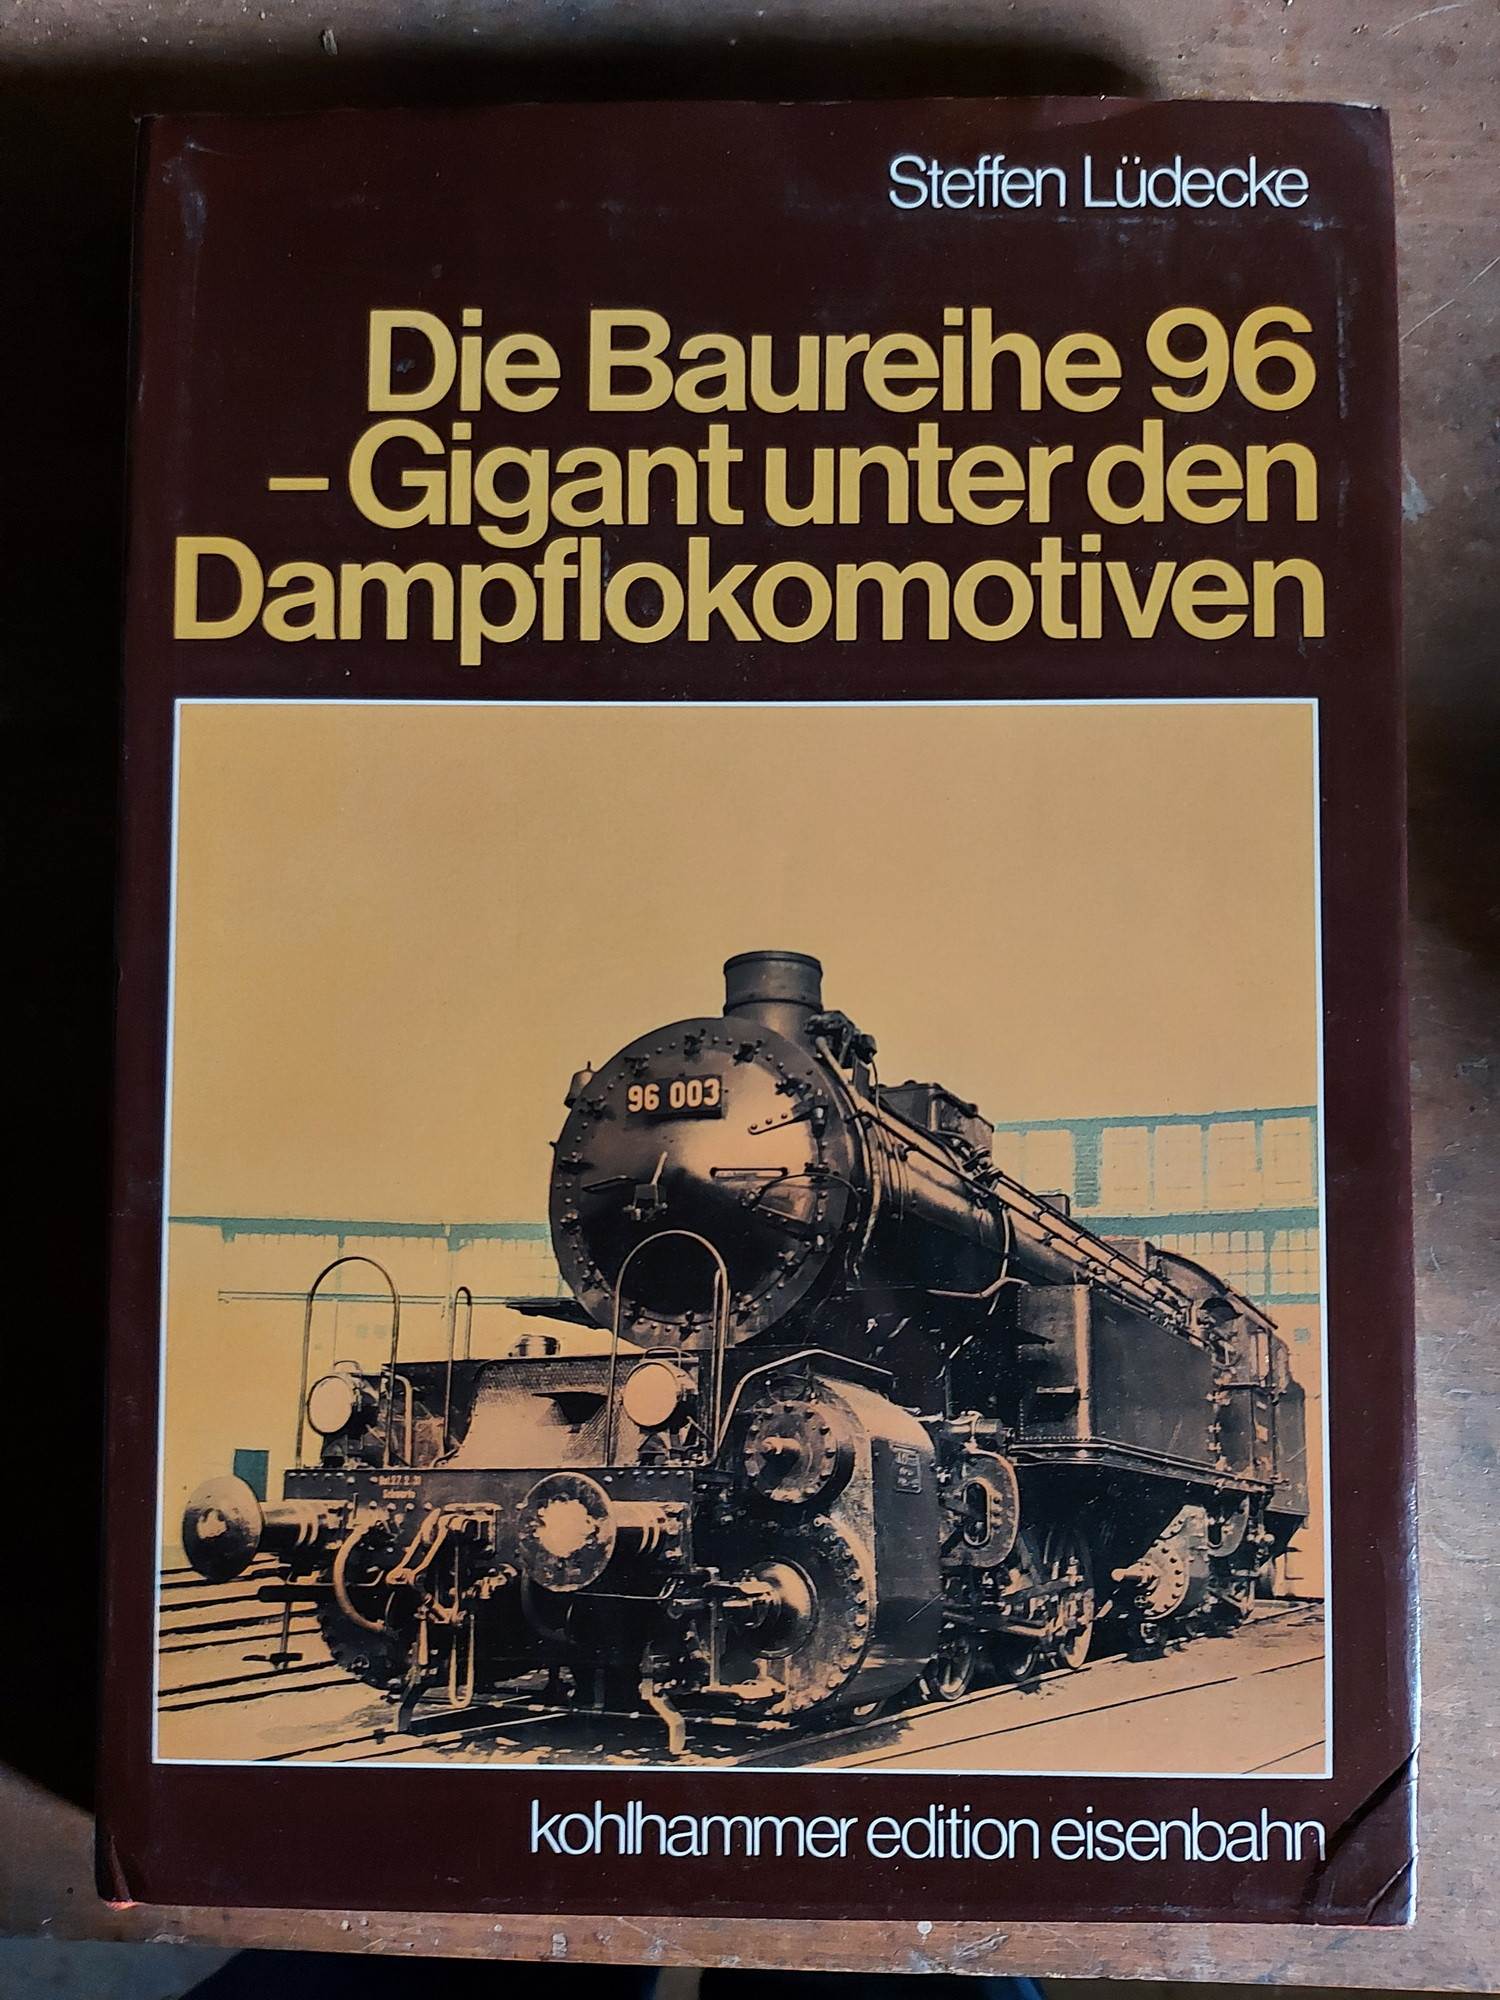 Die Baureihe 96 - Gigant unter den Dampflokomotiven von Steffen Lüdecke